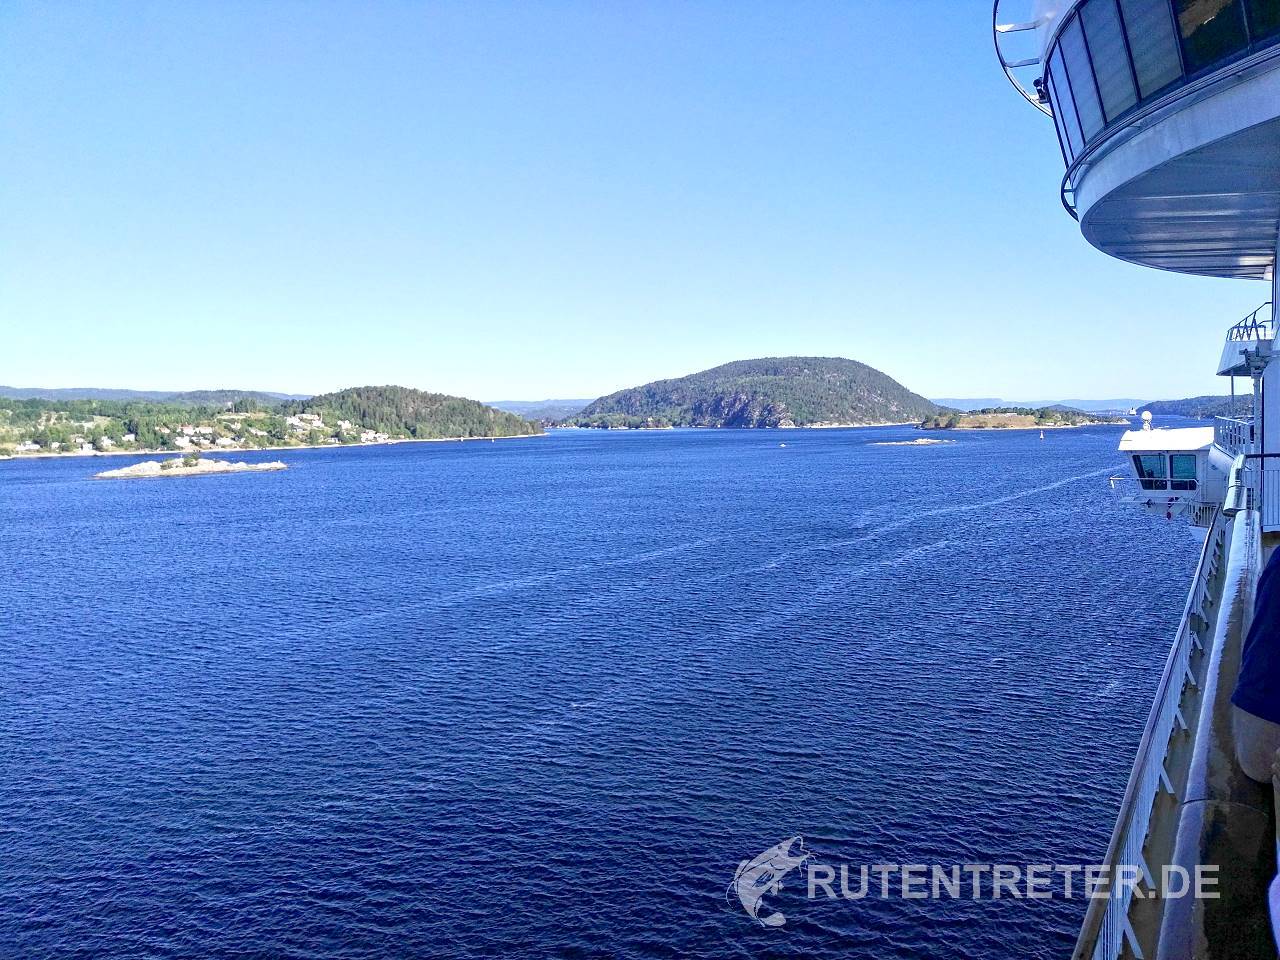 Der Oslo-Fjord, ca. 100 km lang, ist immer wieder schön anzusehen | © 2018 Rutentreter.de